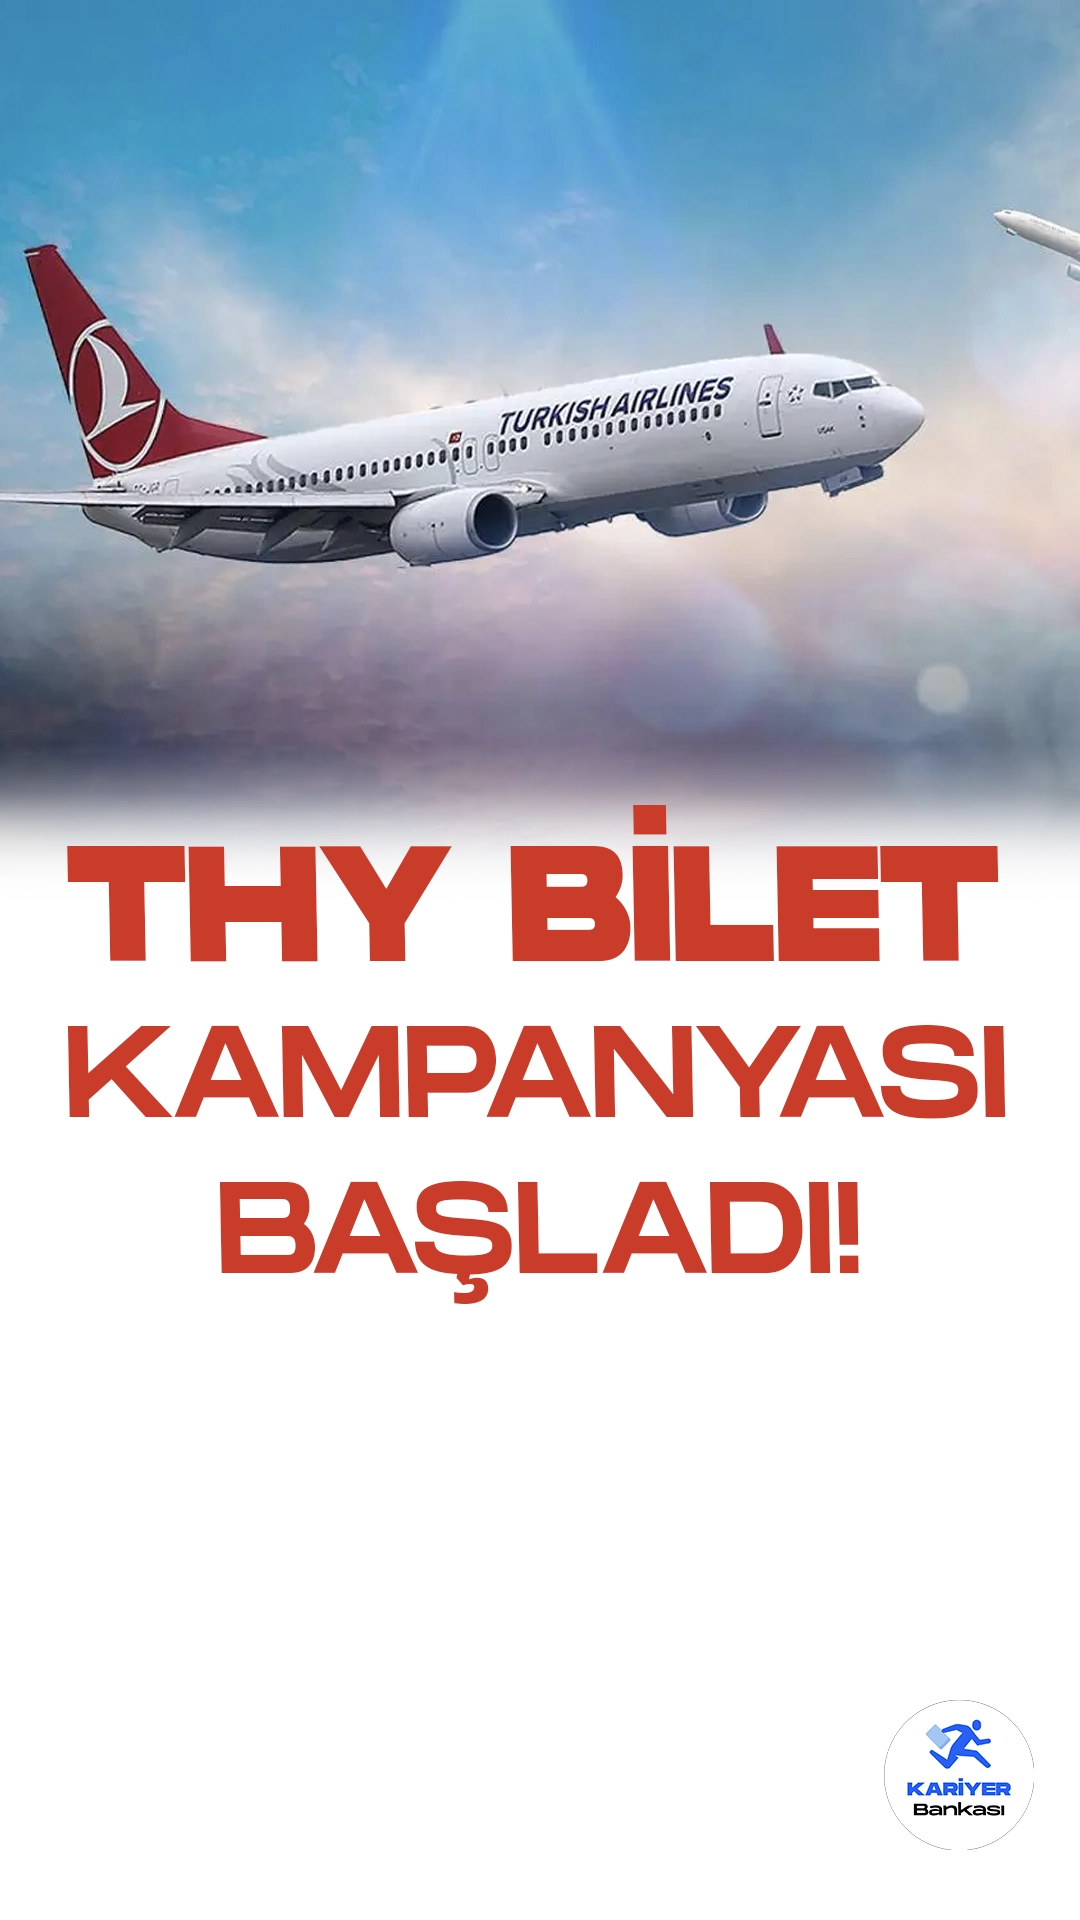 THY Avrupa Ülkelerine Bilet Kampanyası Başlattı!Türk Hava Yolları, Doğu Avrupa Seyahatlerini Uygun Fiyatlarla Sunuyor.